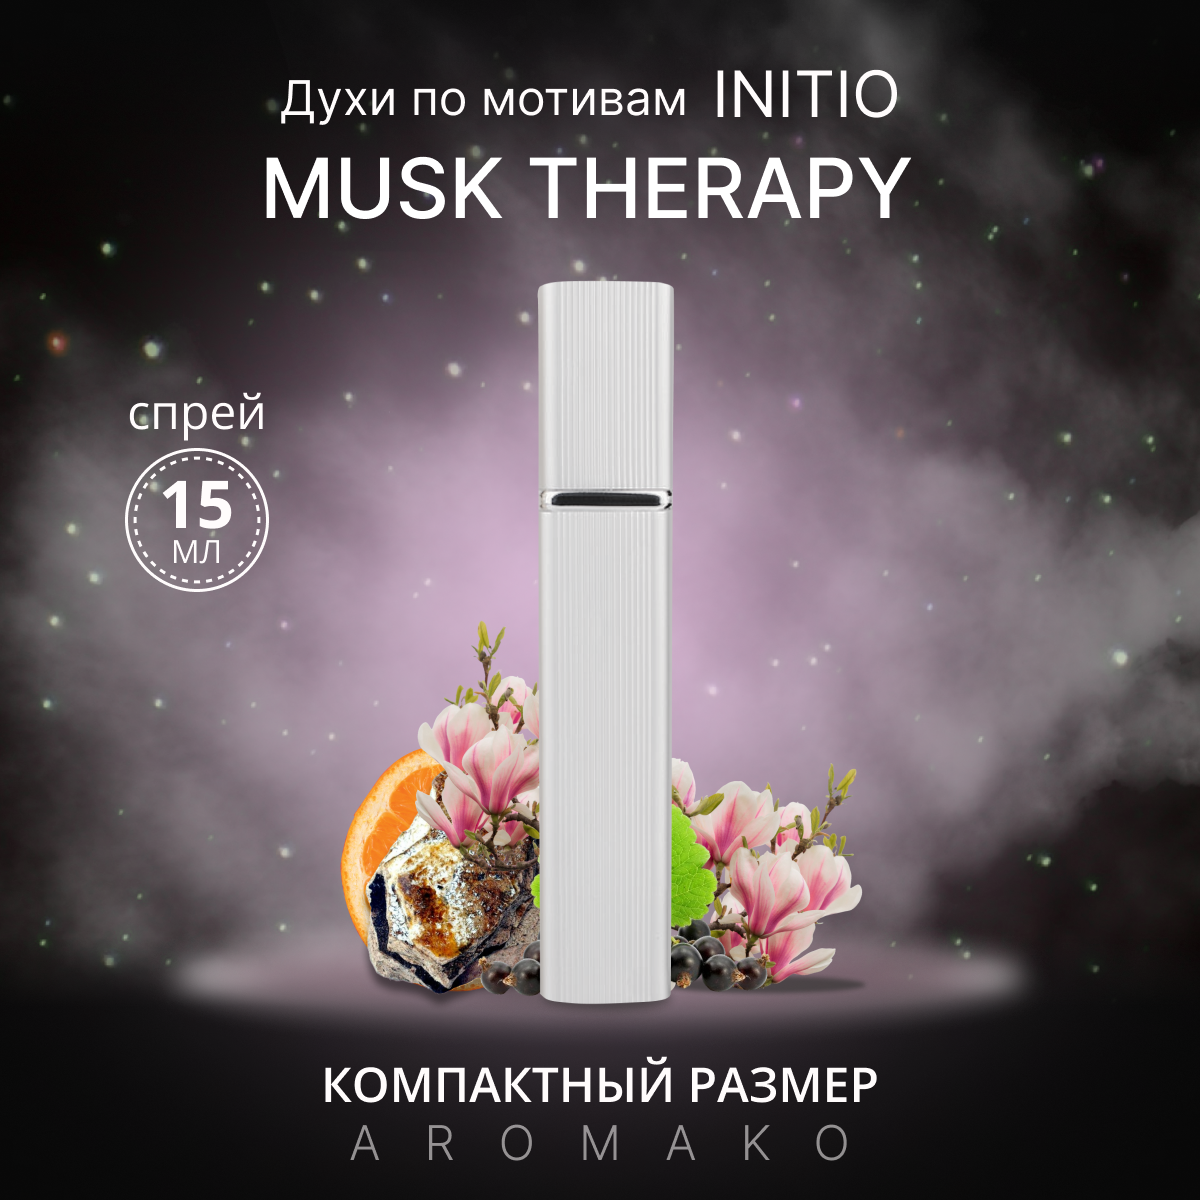 Духи по мотивам Musk Therapy, Initio, спрей 15 мл AROMAKO